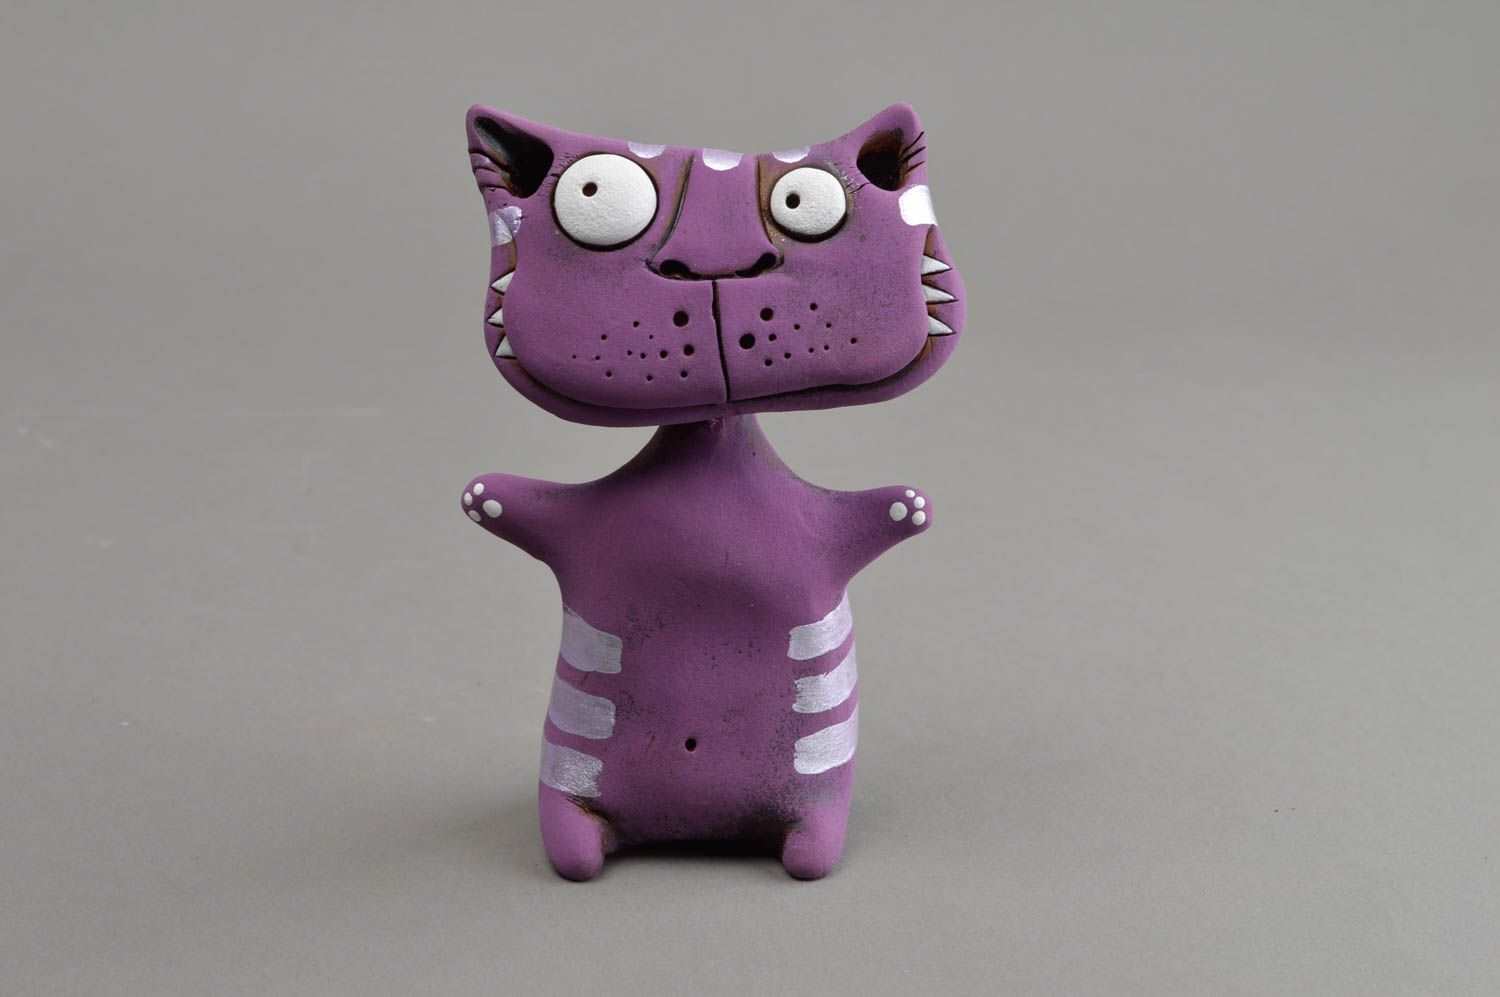 Фиолетовая глиняная статуэтка в виде кота ручной работы расписанная красками фото 2